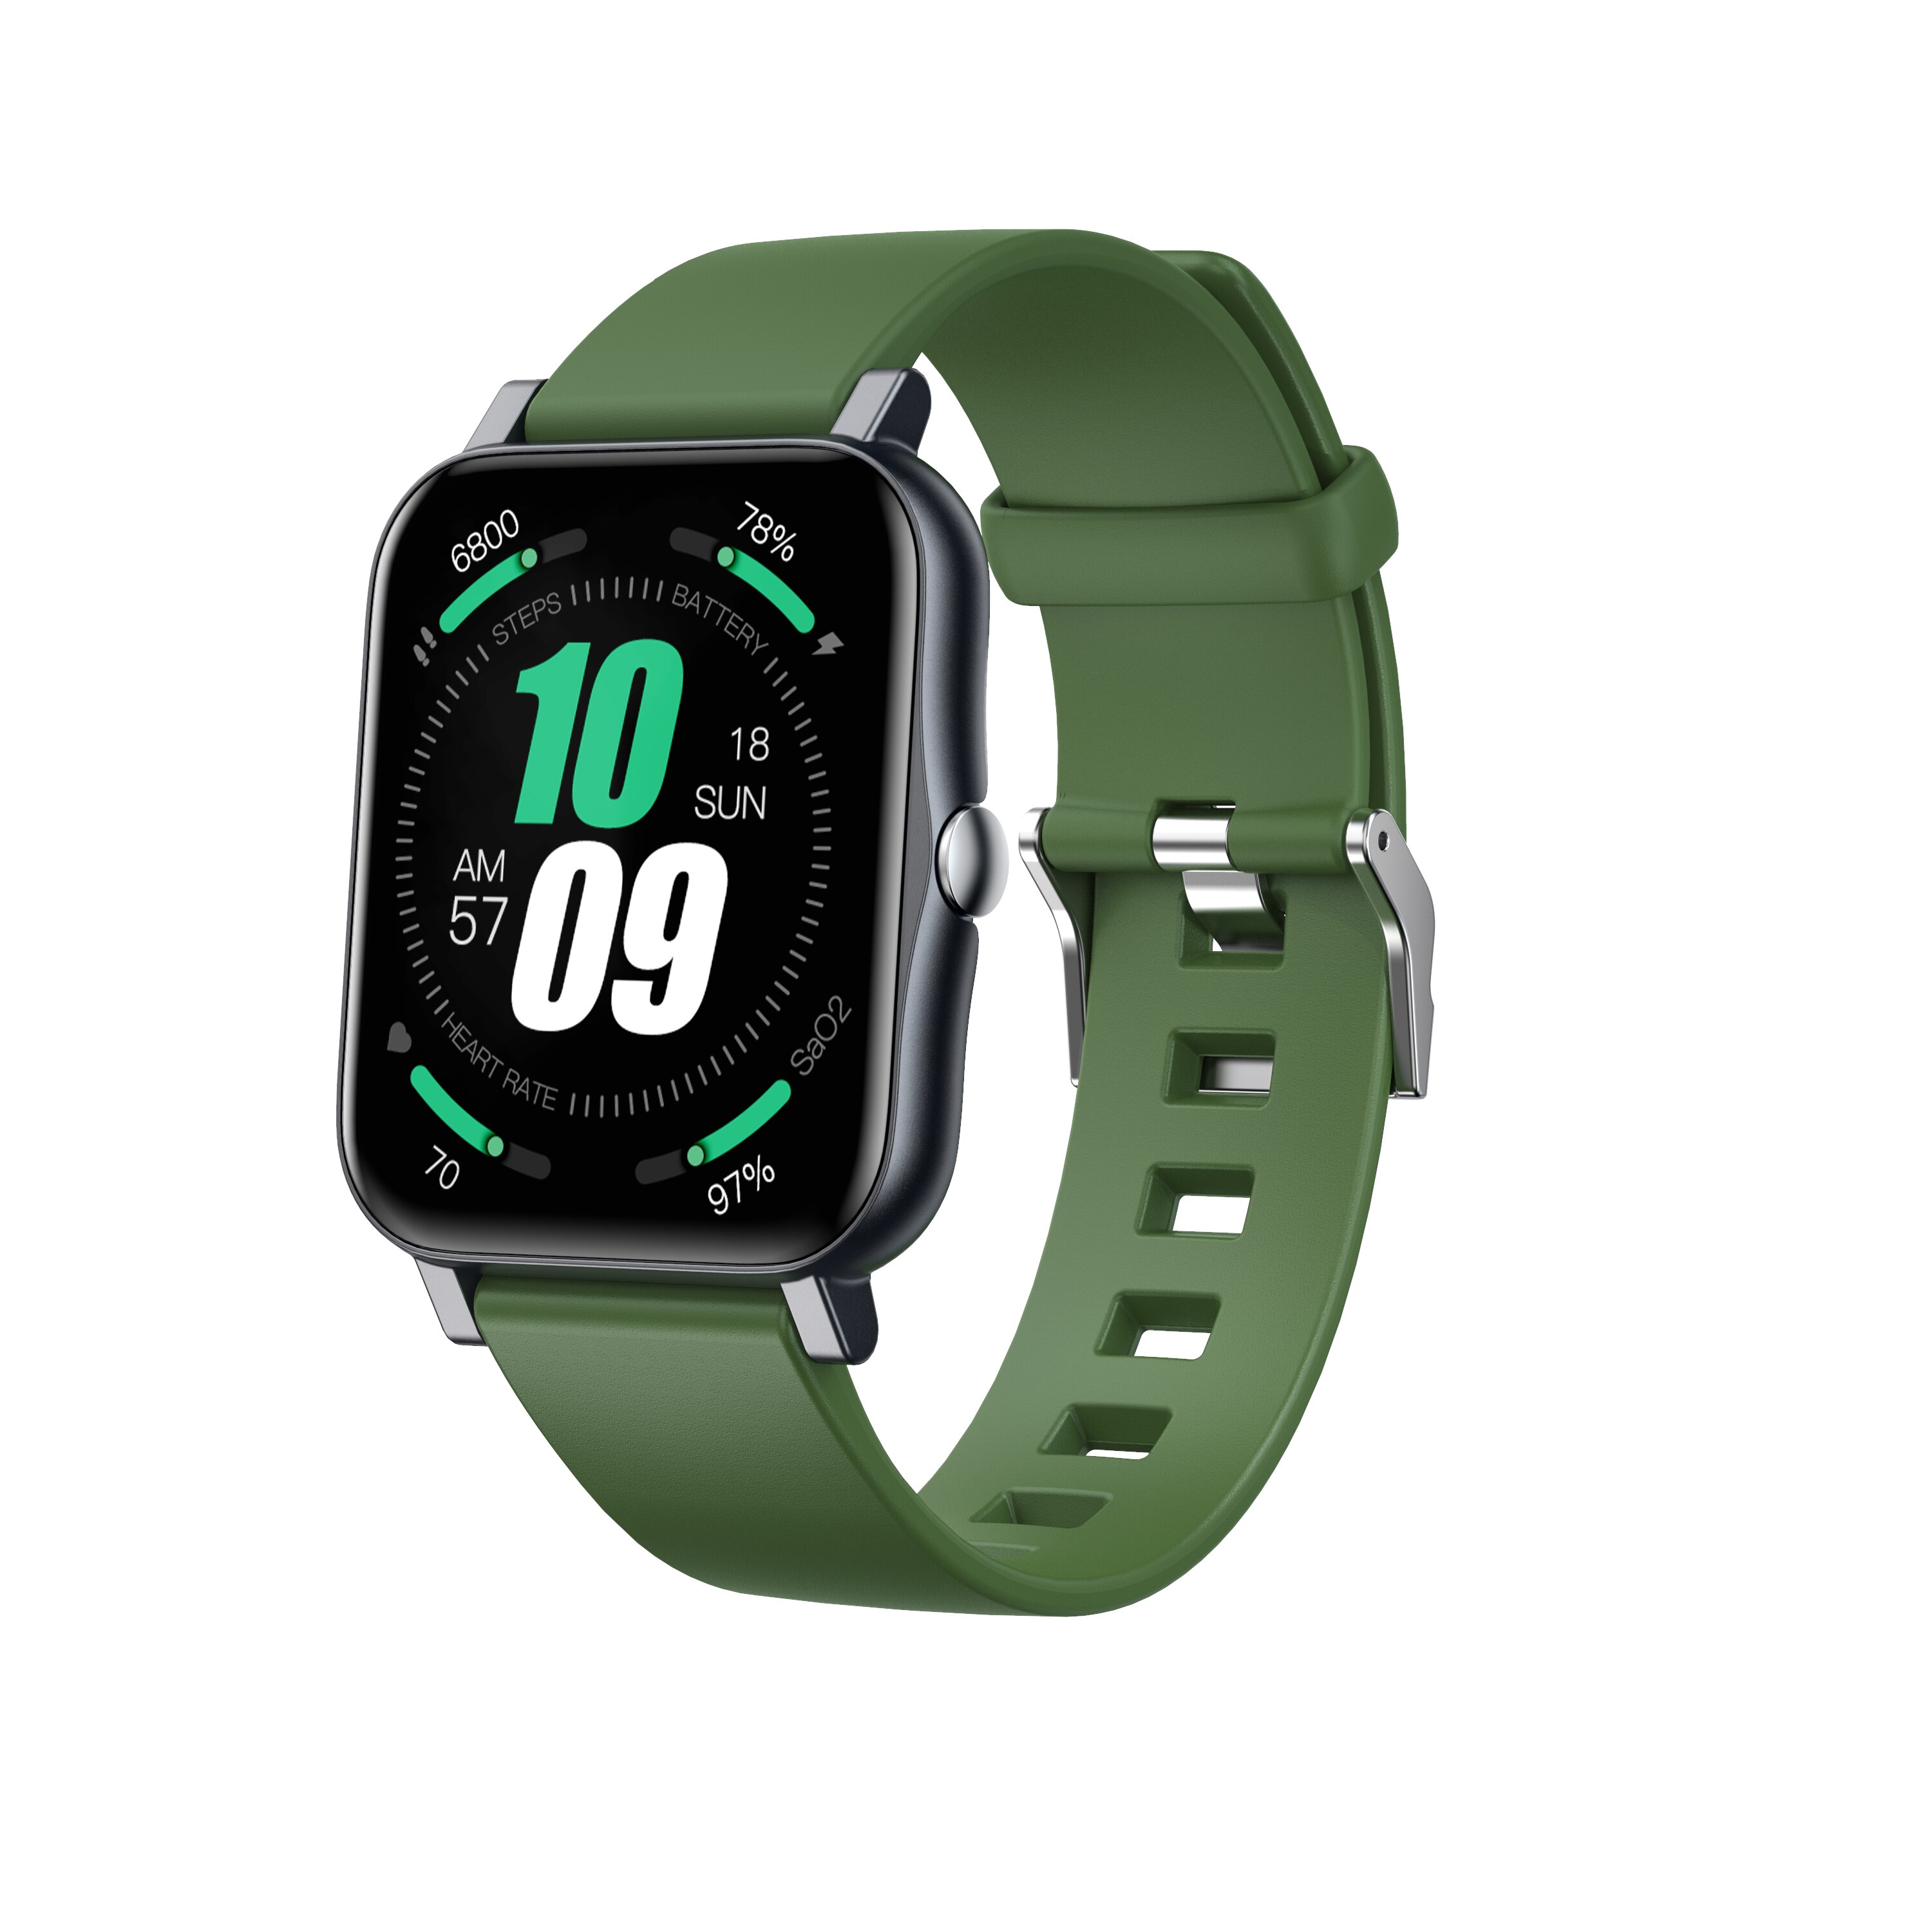 Smartwatch voll berühren S80 OutdooSport Modus Plus Clever Uhr Männer Herz Bewertung Monitor Für iOS Android Uhren Profi: lv